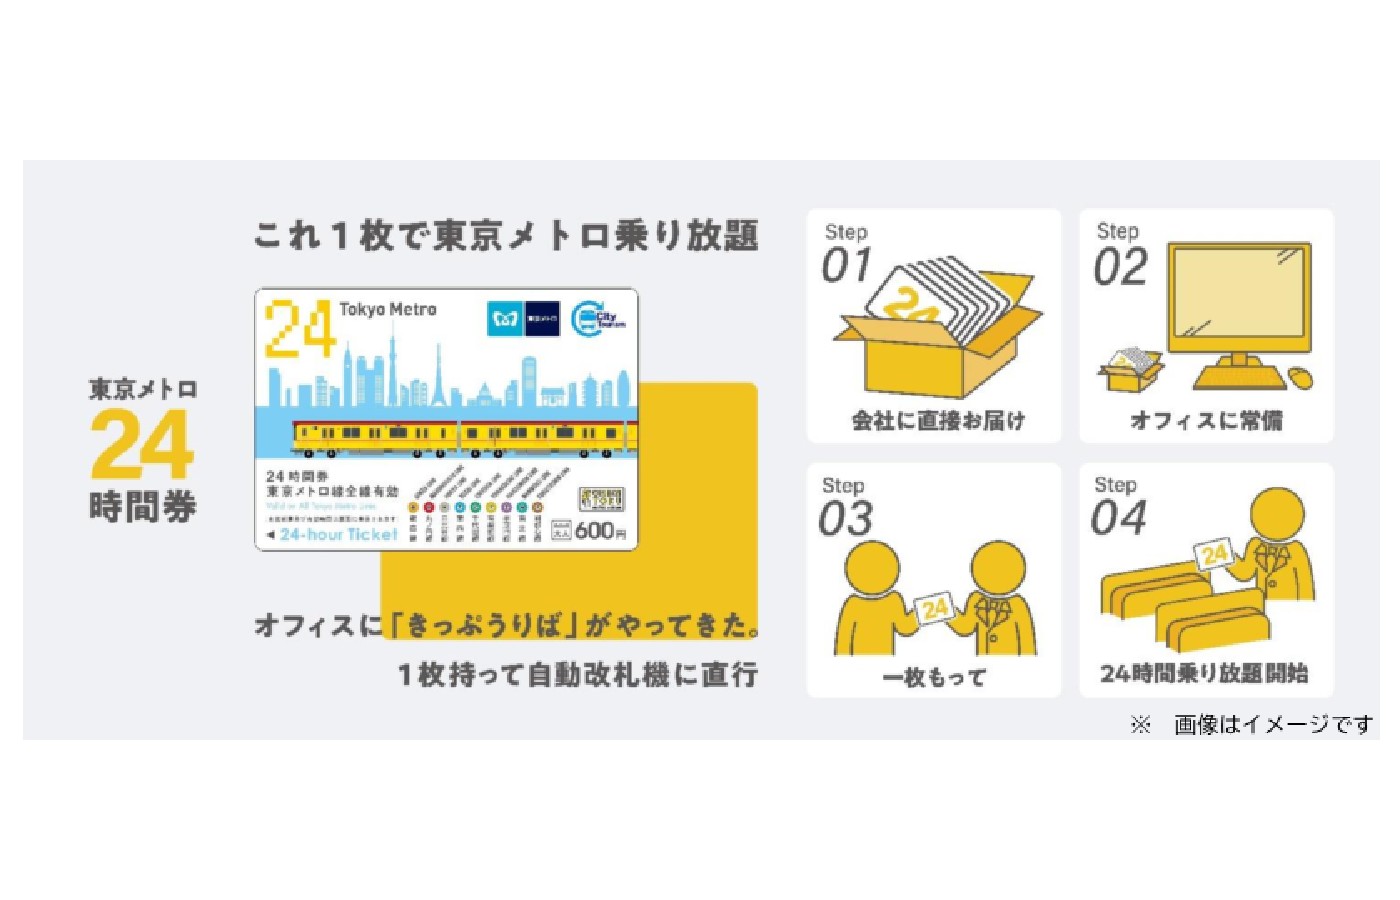 東京メトロ線全9路線が乗り放題となる「東京メトロ24時間券」をAmazon.co.jpとAmazonビジネスで販売開始